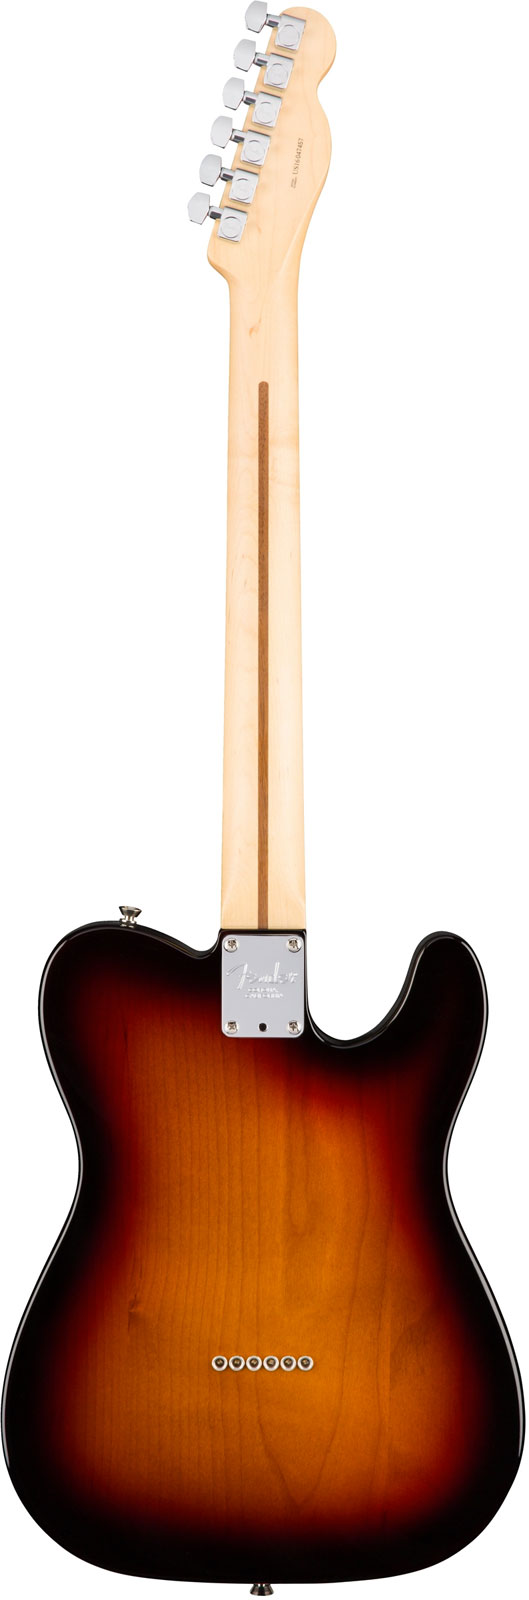 Fender Tele American Professional Lh Usa Gaucher 2s Mn - 3-color Sunburst - Linkshandige elektrische gitaar - Variation 1